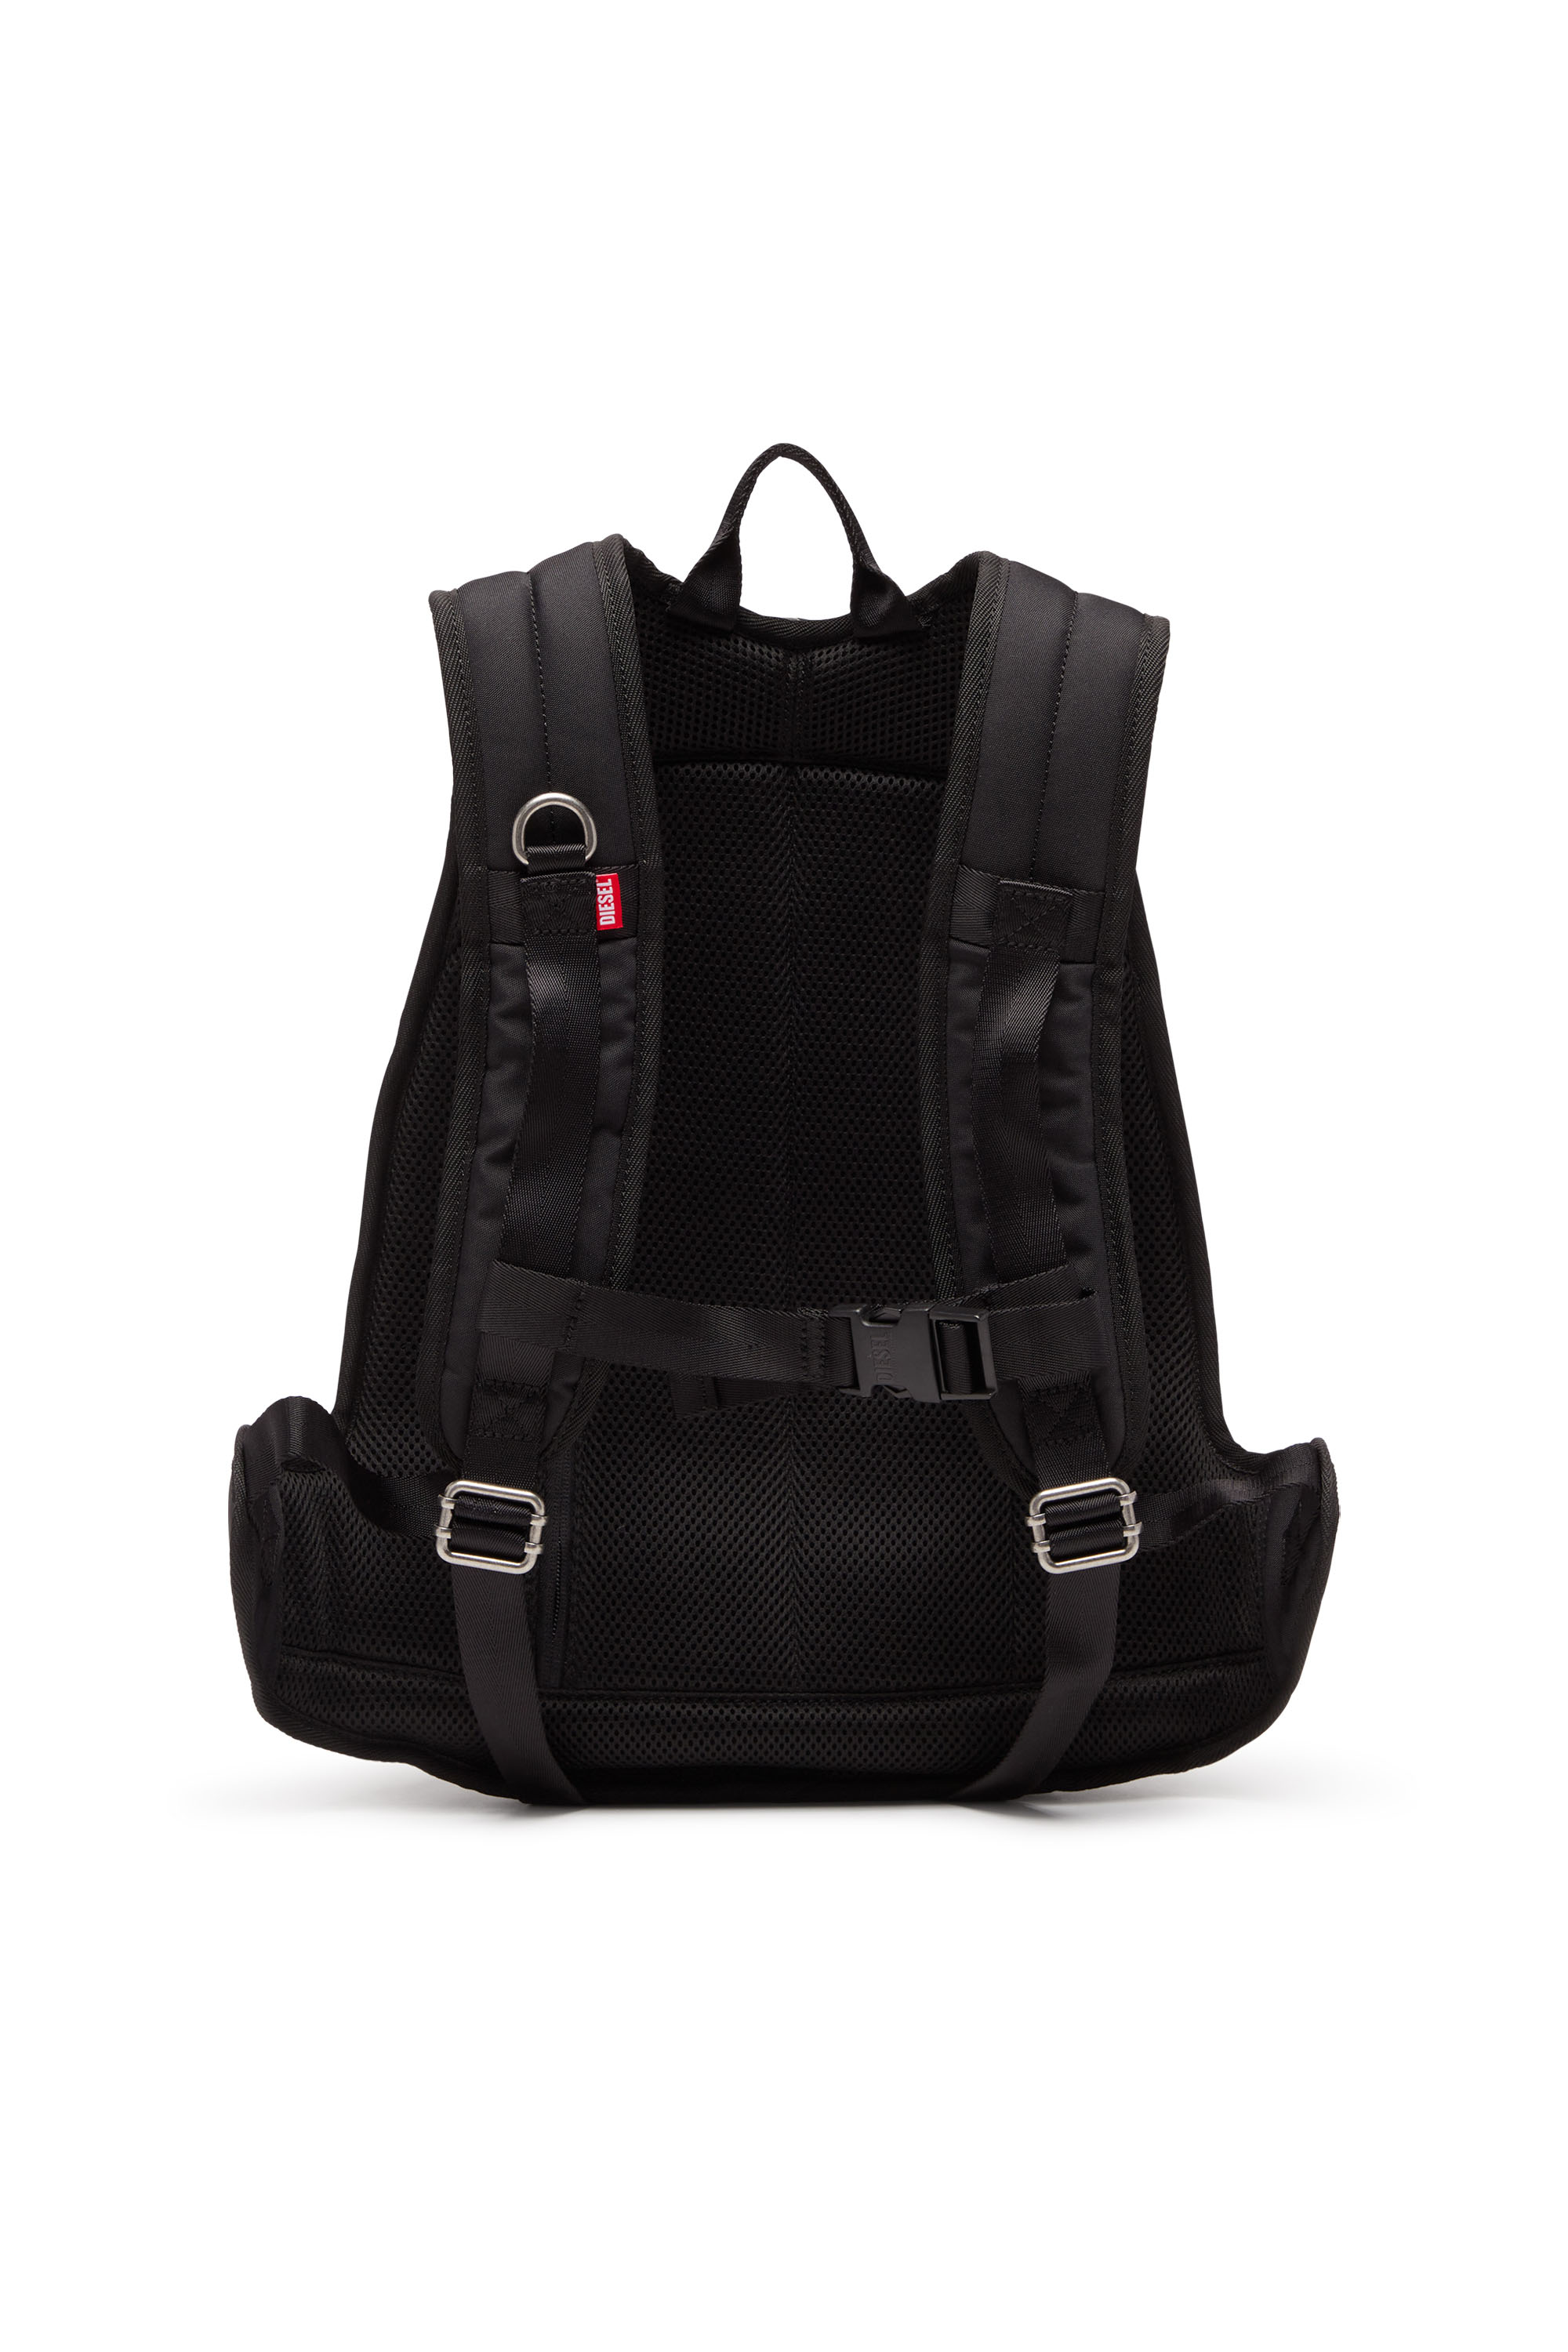 Diesel - 1DR-POD BACKPACK, Man 1DR-Pod Backpack - Hard shell backpack in Black - Image 2